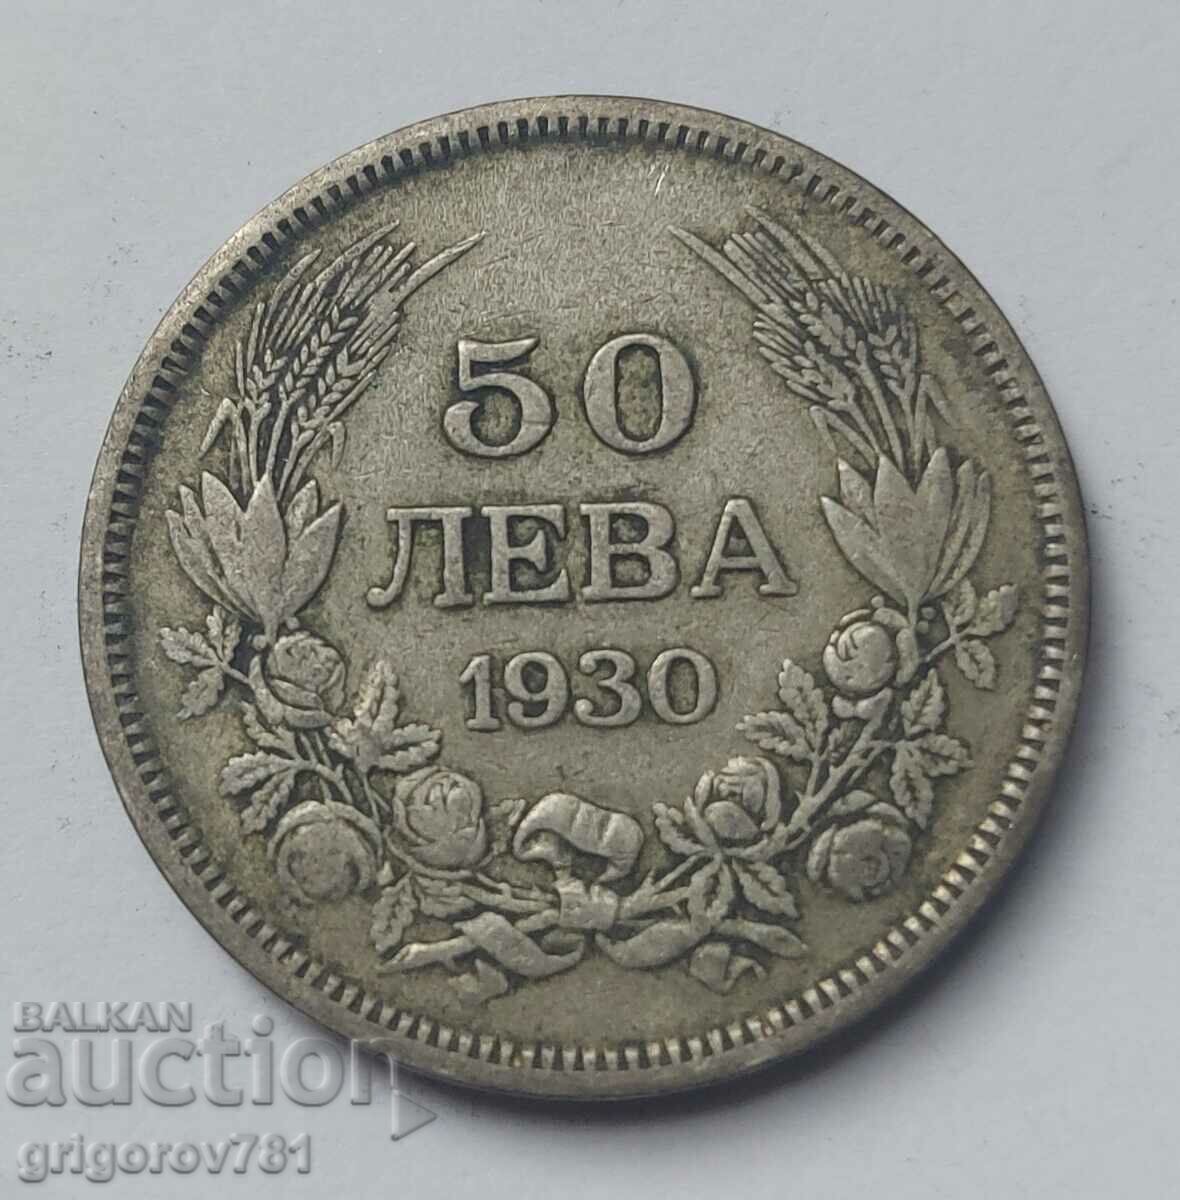 50 leva silver Bulgaria 1930 - silver coin #41